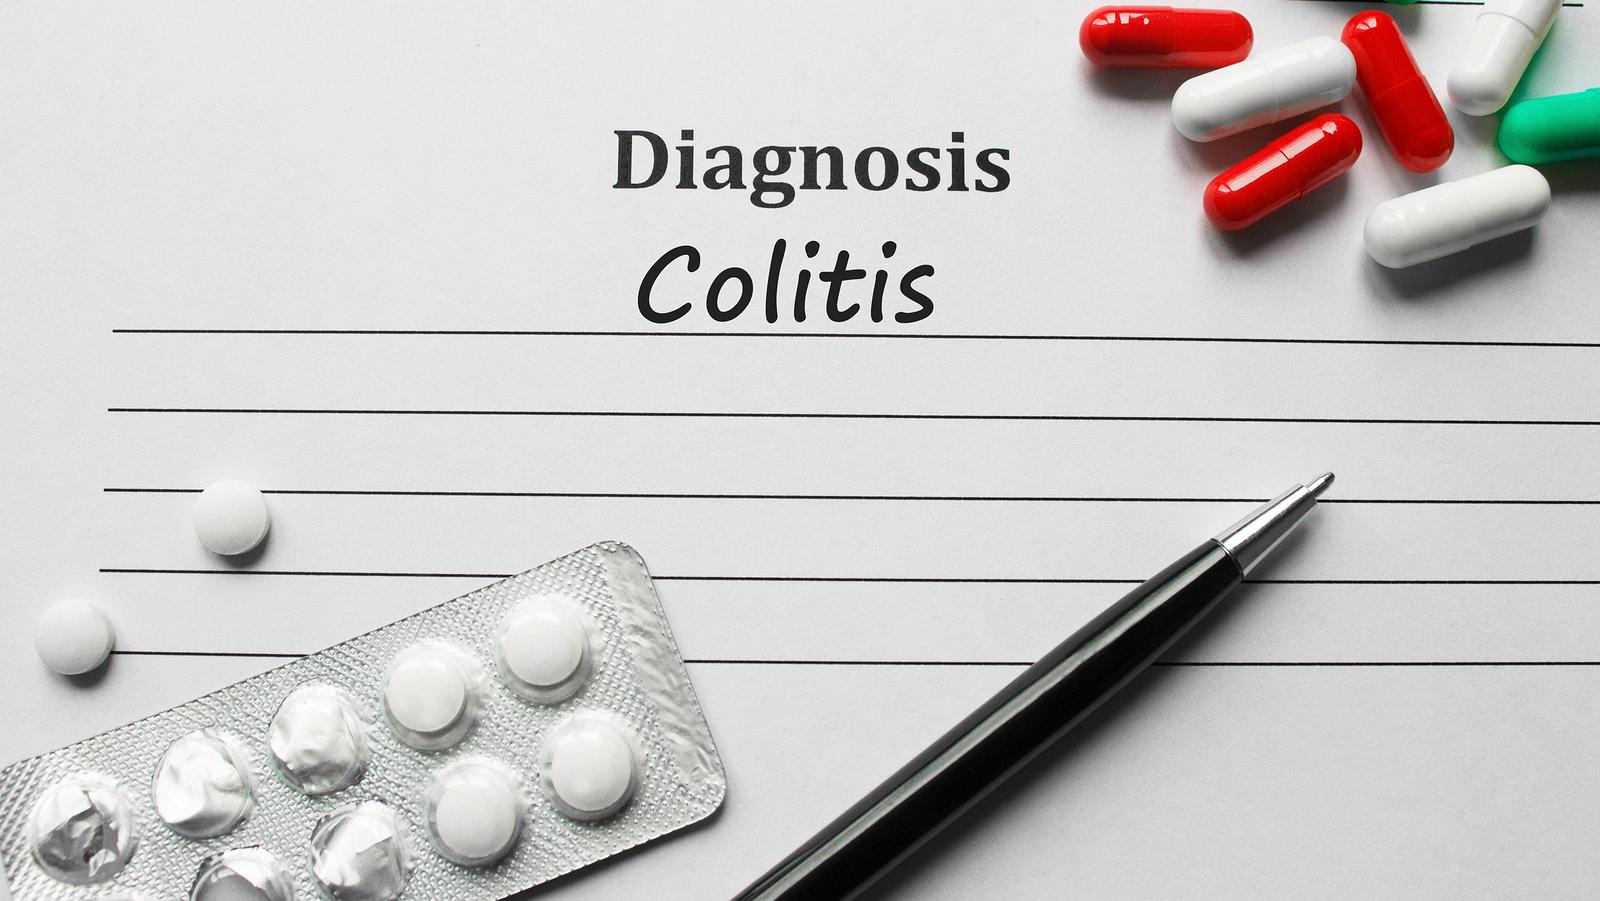 Presná príčina vzniku ochorenia ulcerózna kolitída nie je známa